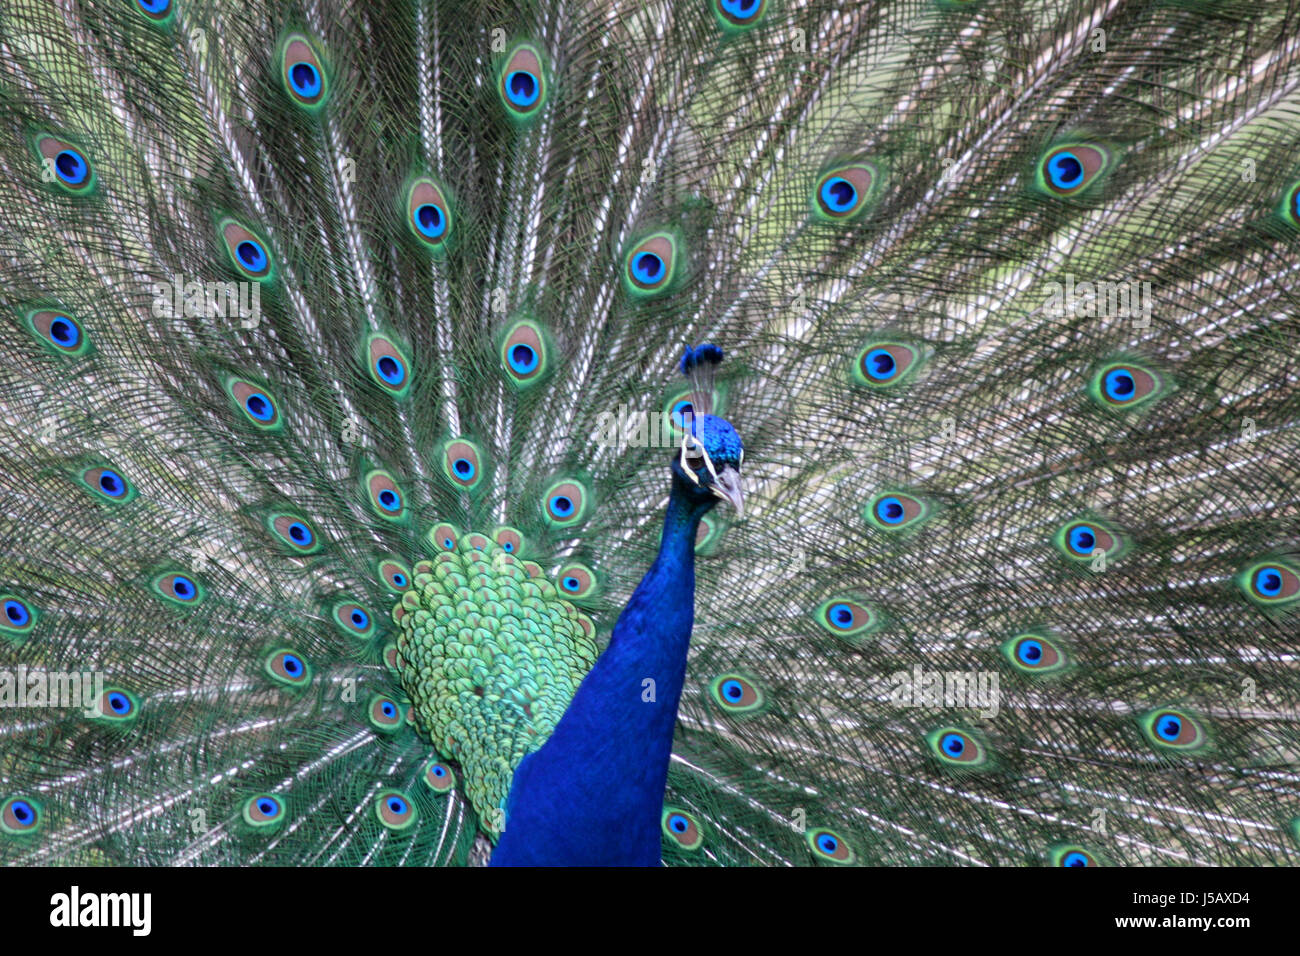 blaue Rad Vogel Vögel Federn Gefieder männlicher Pfau Feder Pfauenfeder  Stockfotografie - Alamy